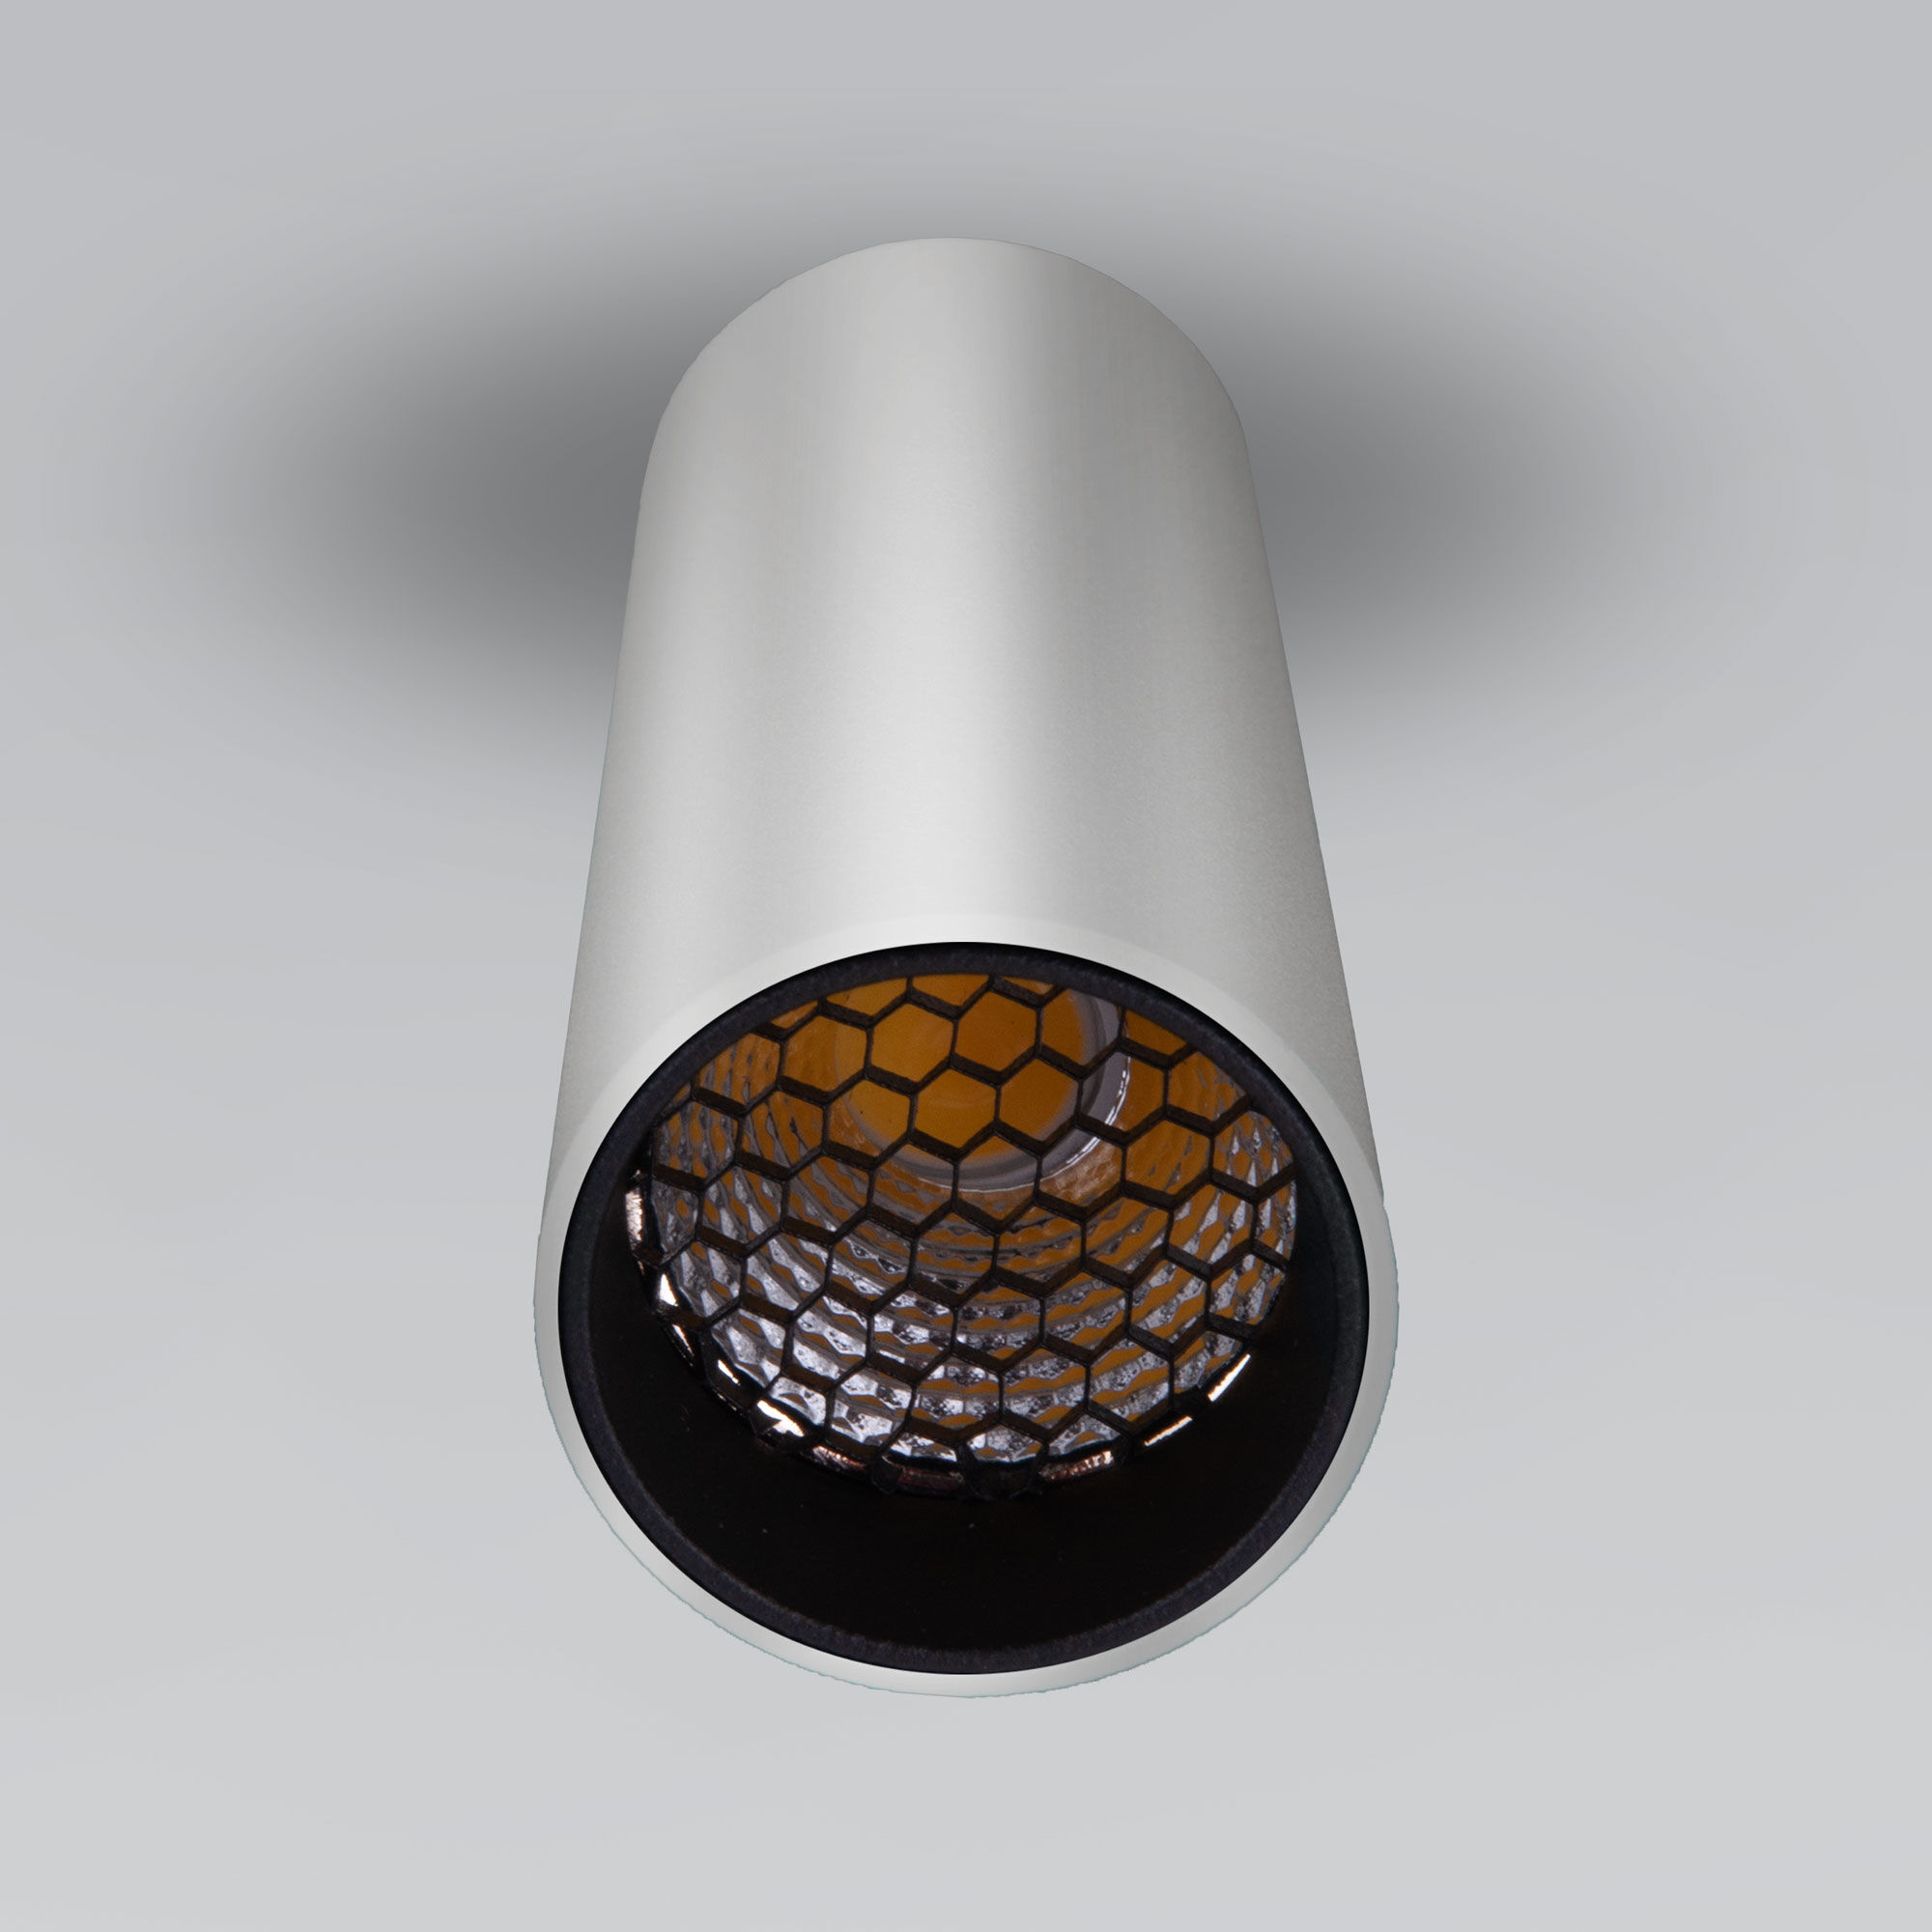 Накладной светодиодный светильник Pika 25031/LED 6W 4200K серебро